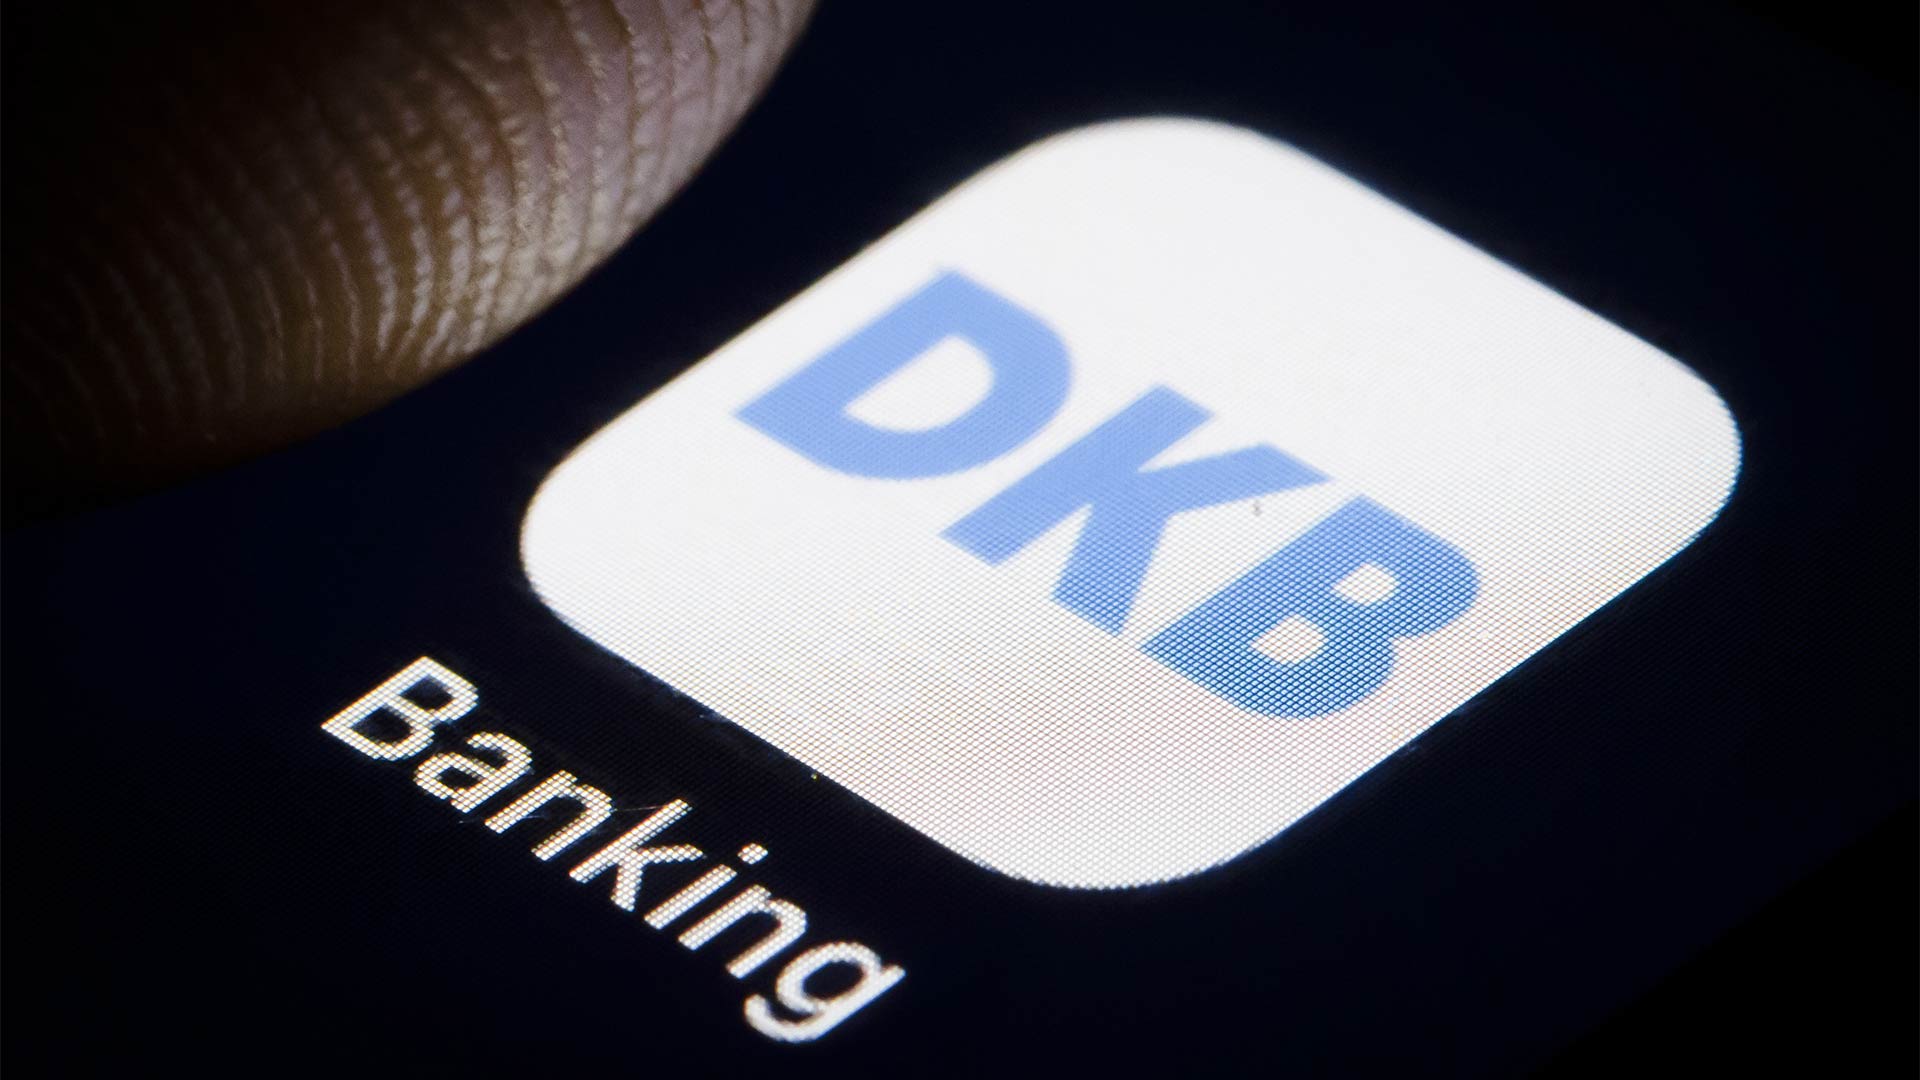 Das Logo der DKB auf einem Smartphone | picture alliance / photothek